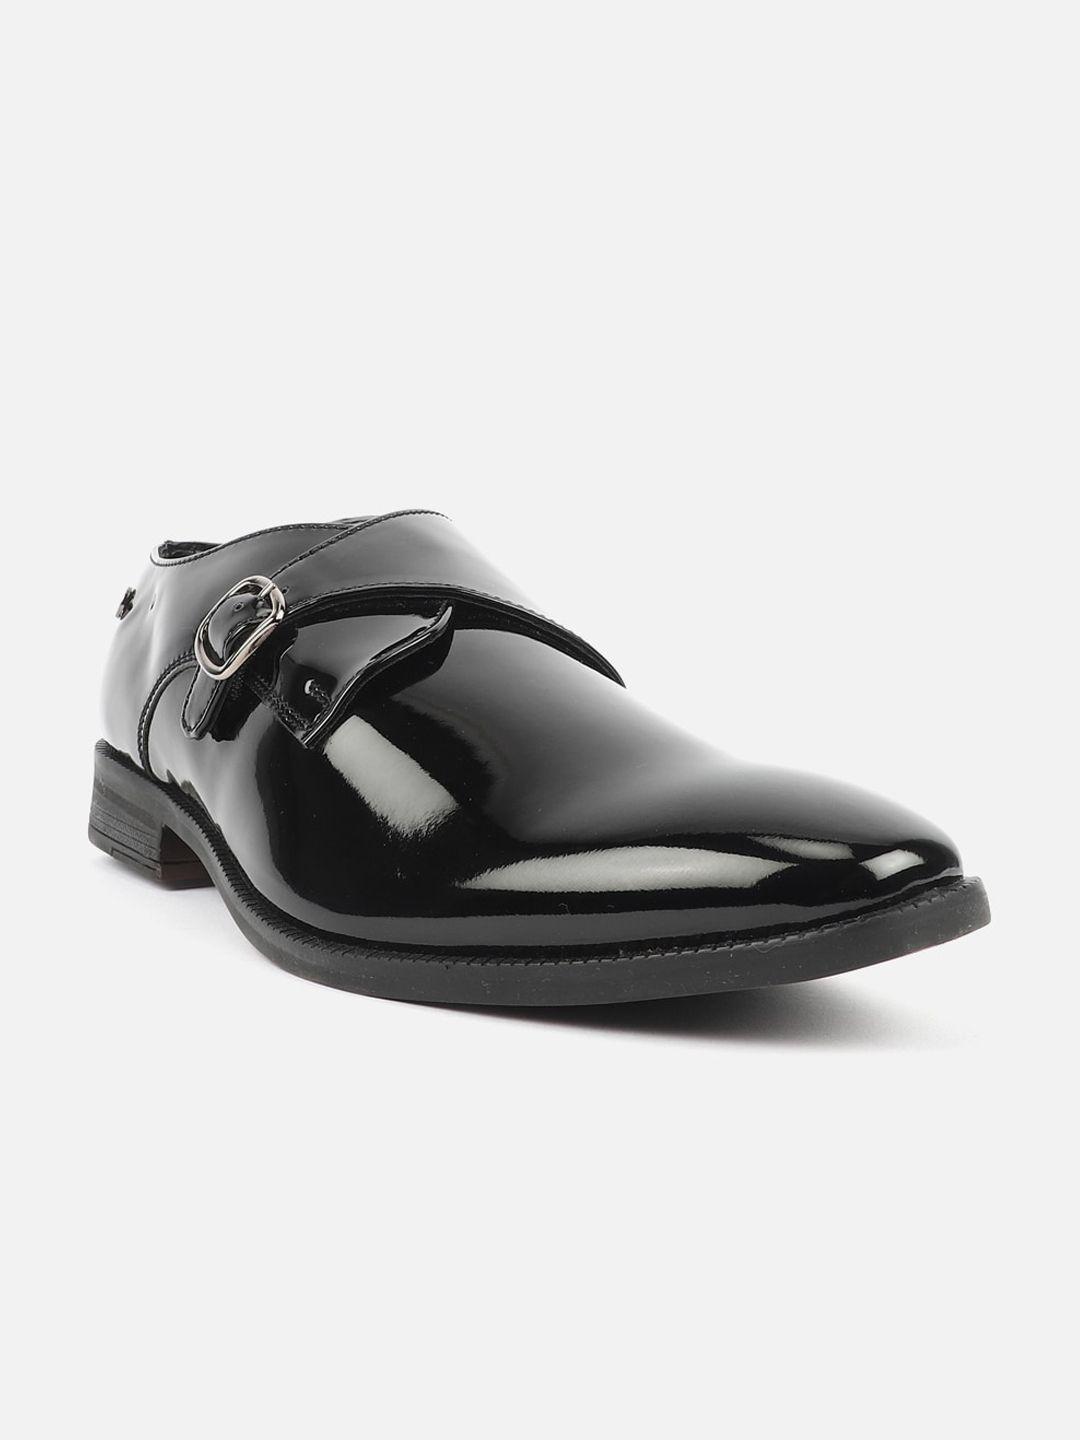 carlton london men formal monk shoes